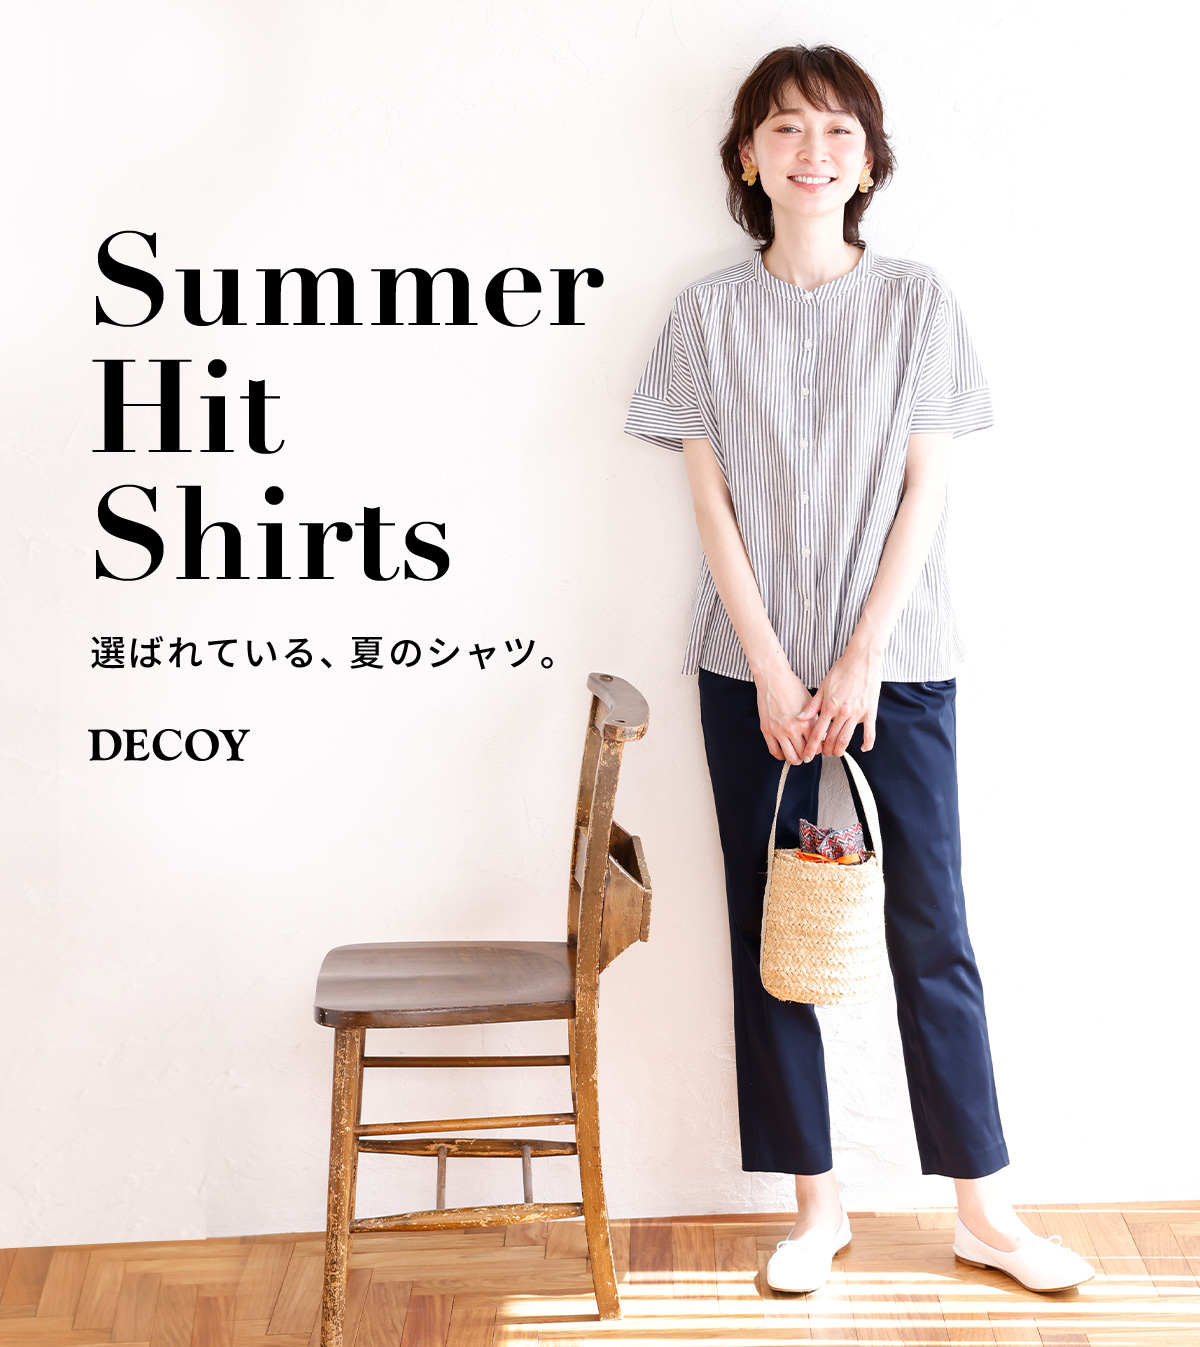 Summer Hit Shirts 選ばれている、夏のシャツ。